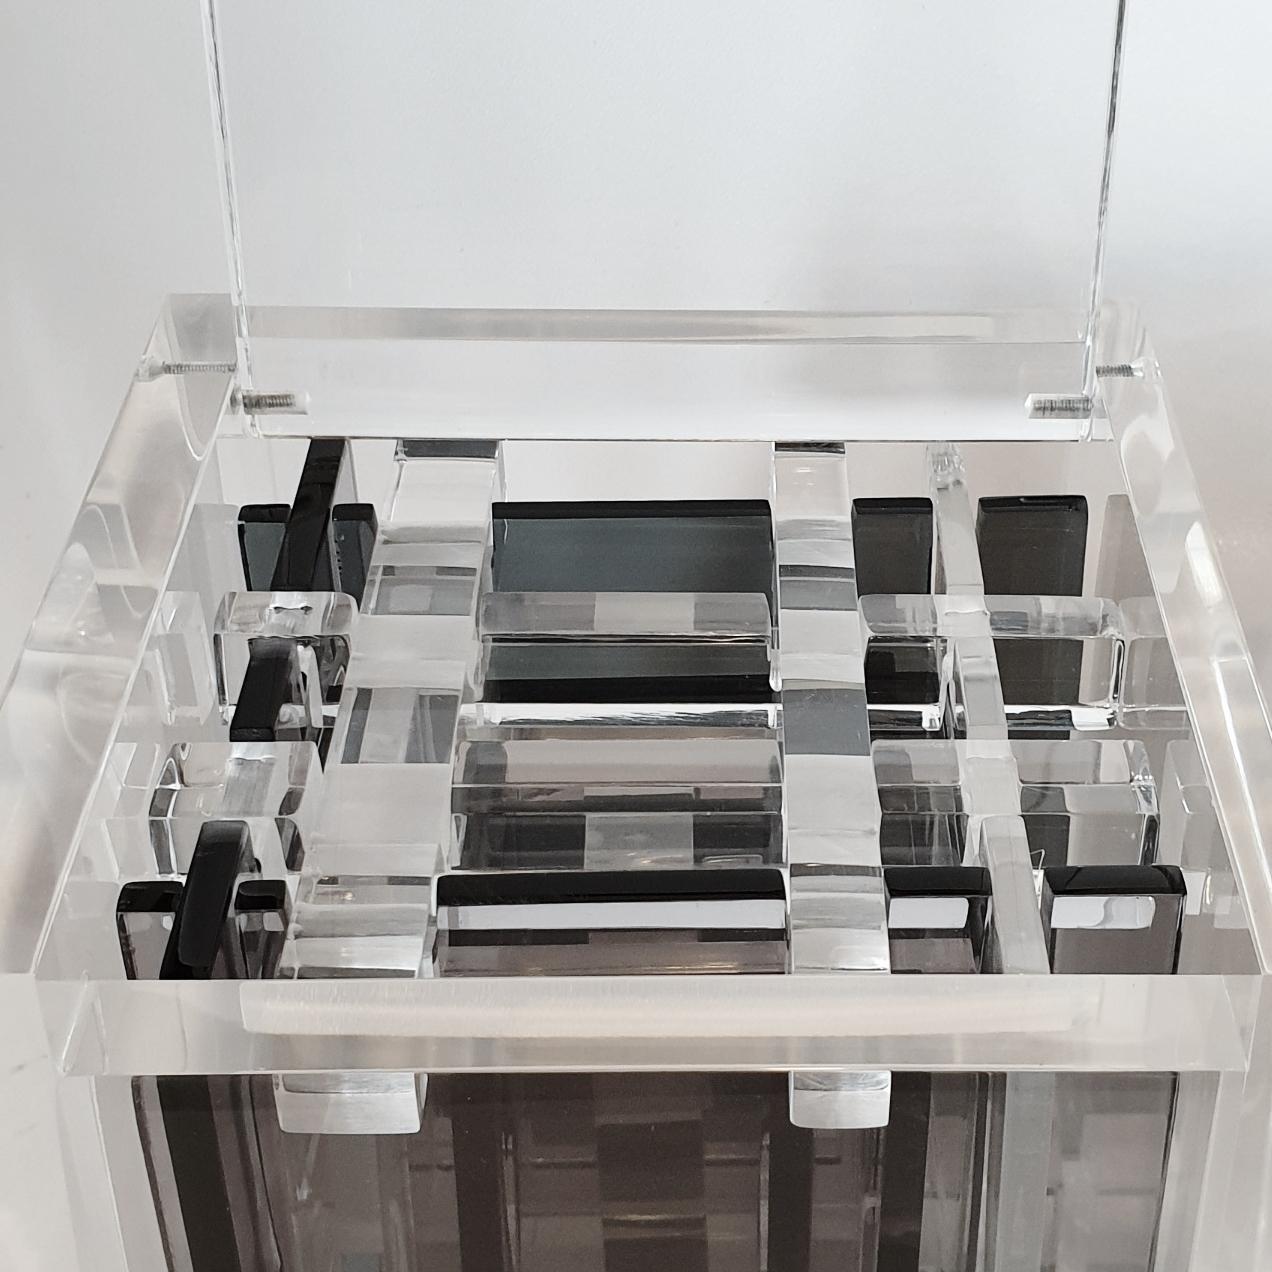 Hommage à Bach est une sculpture cubique moderne contemporaine unique de petite taille réalisée par le célèbre couple d'artistes néerlandais Nel Haringa et Fred Olijve. La sculpture en forme de cube se compose de quelques dizaines d'éléments en